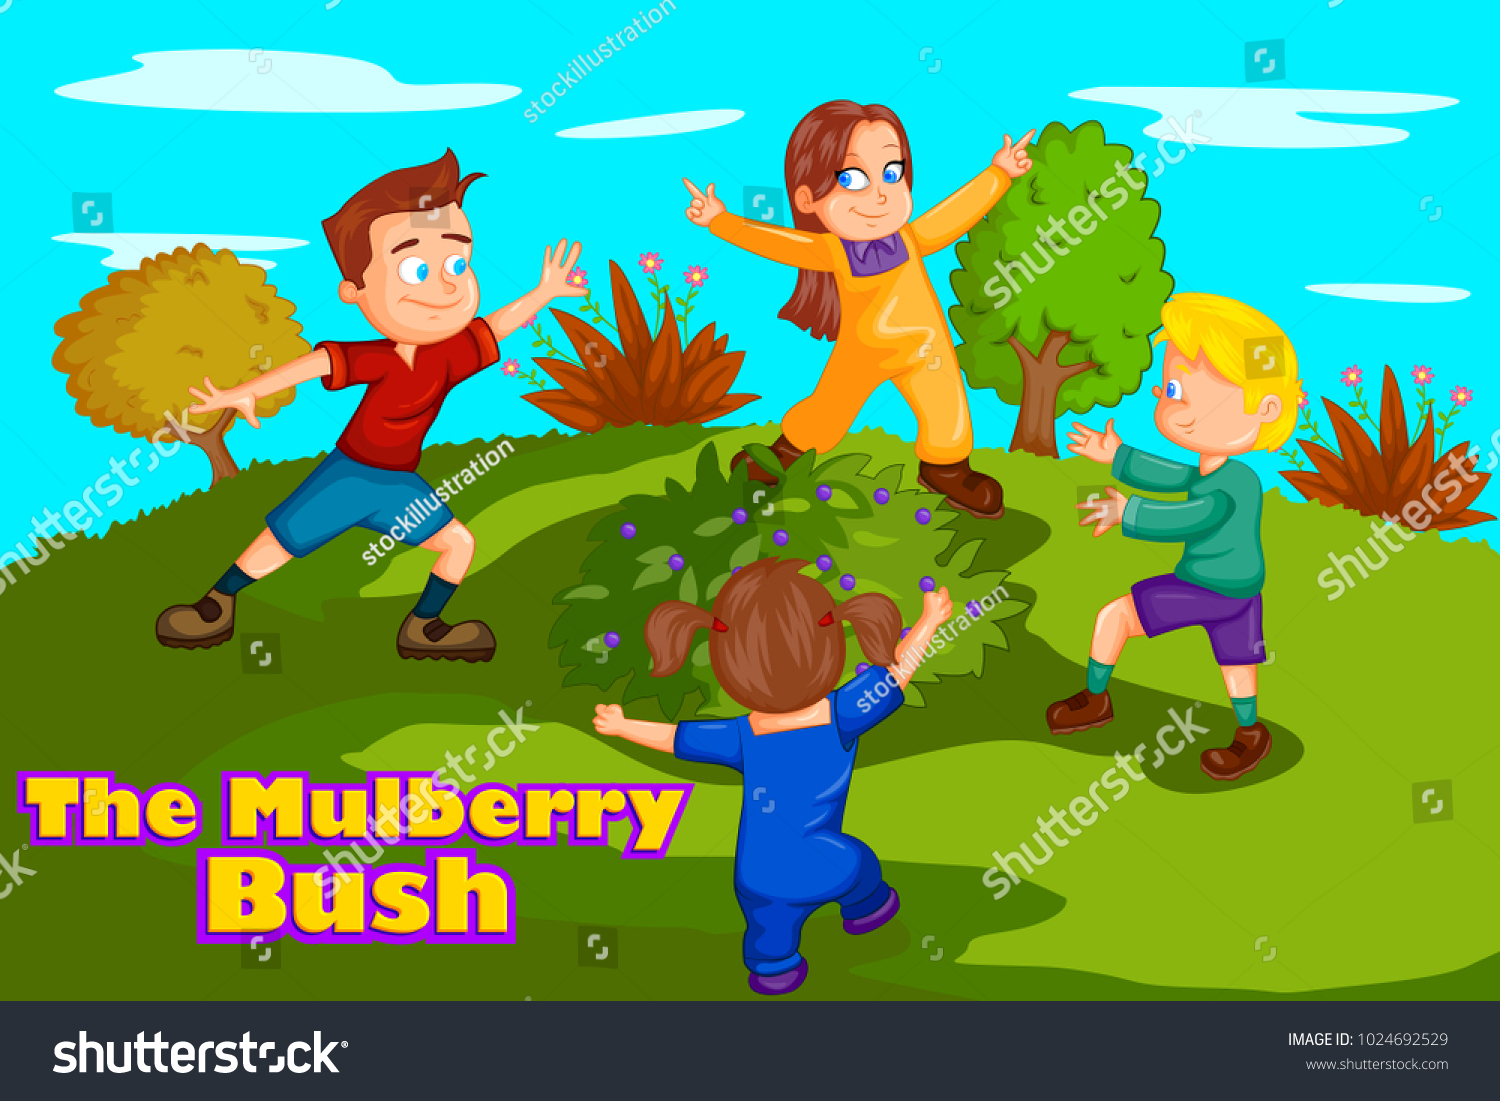 Bringing back the bush image